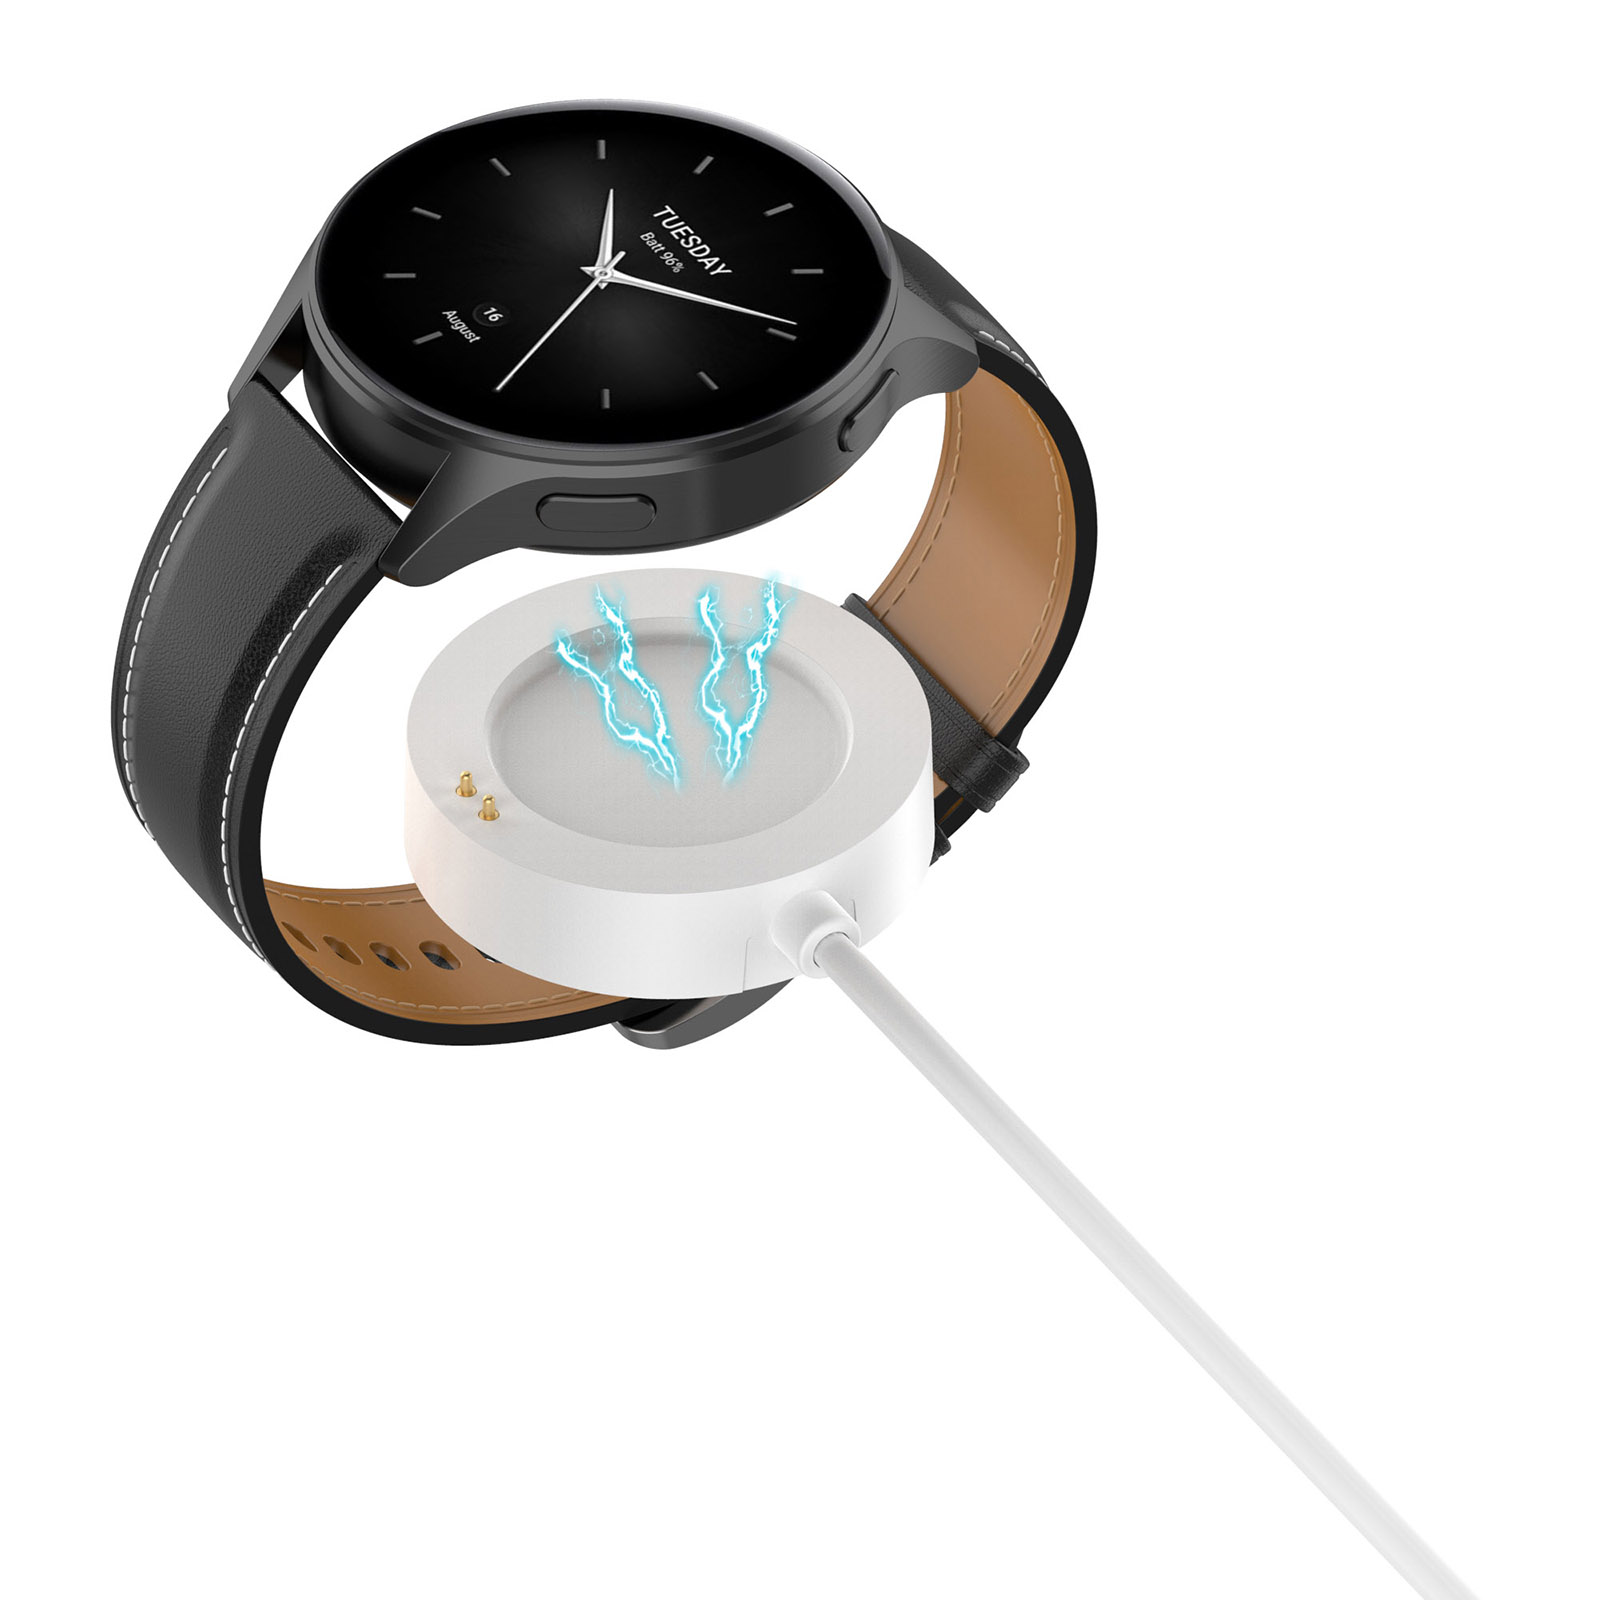 【磁吸充電線】小米手錶 S2 Xiaomi Watch 2 Pro S2 S3 H1 通用 充電器 座充式